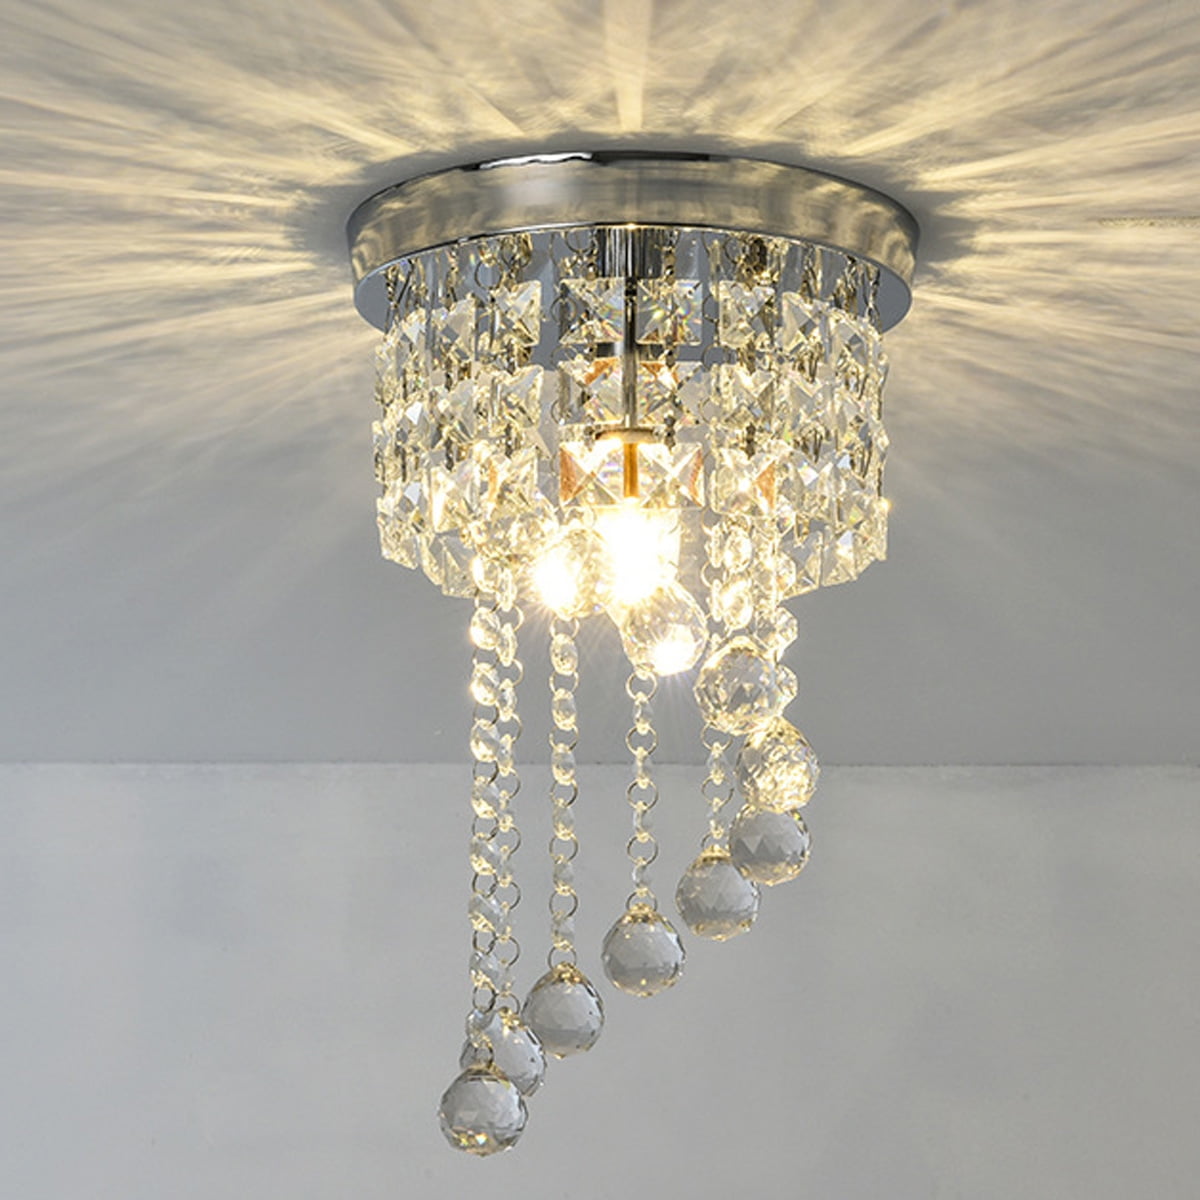 New Modern K9 Clear Crystal Ceiling Light Pendant Lamp Chandelier Lighting #6604 